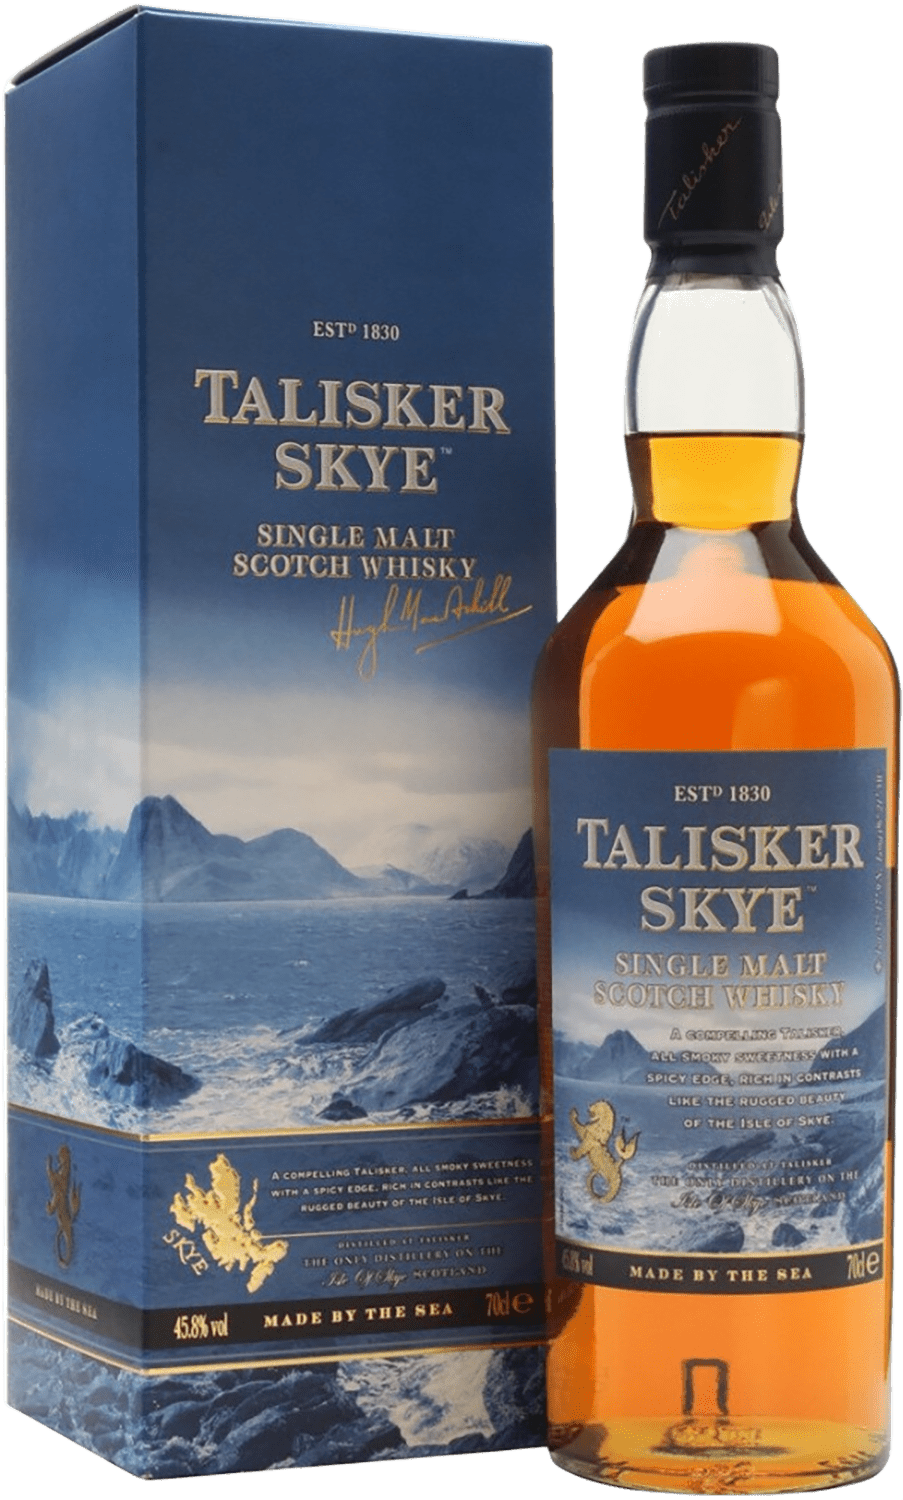 Talisker Skye Single Malt Scotch Whisky (gift box)